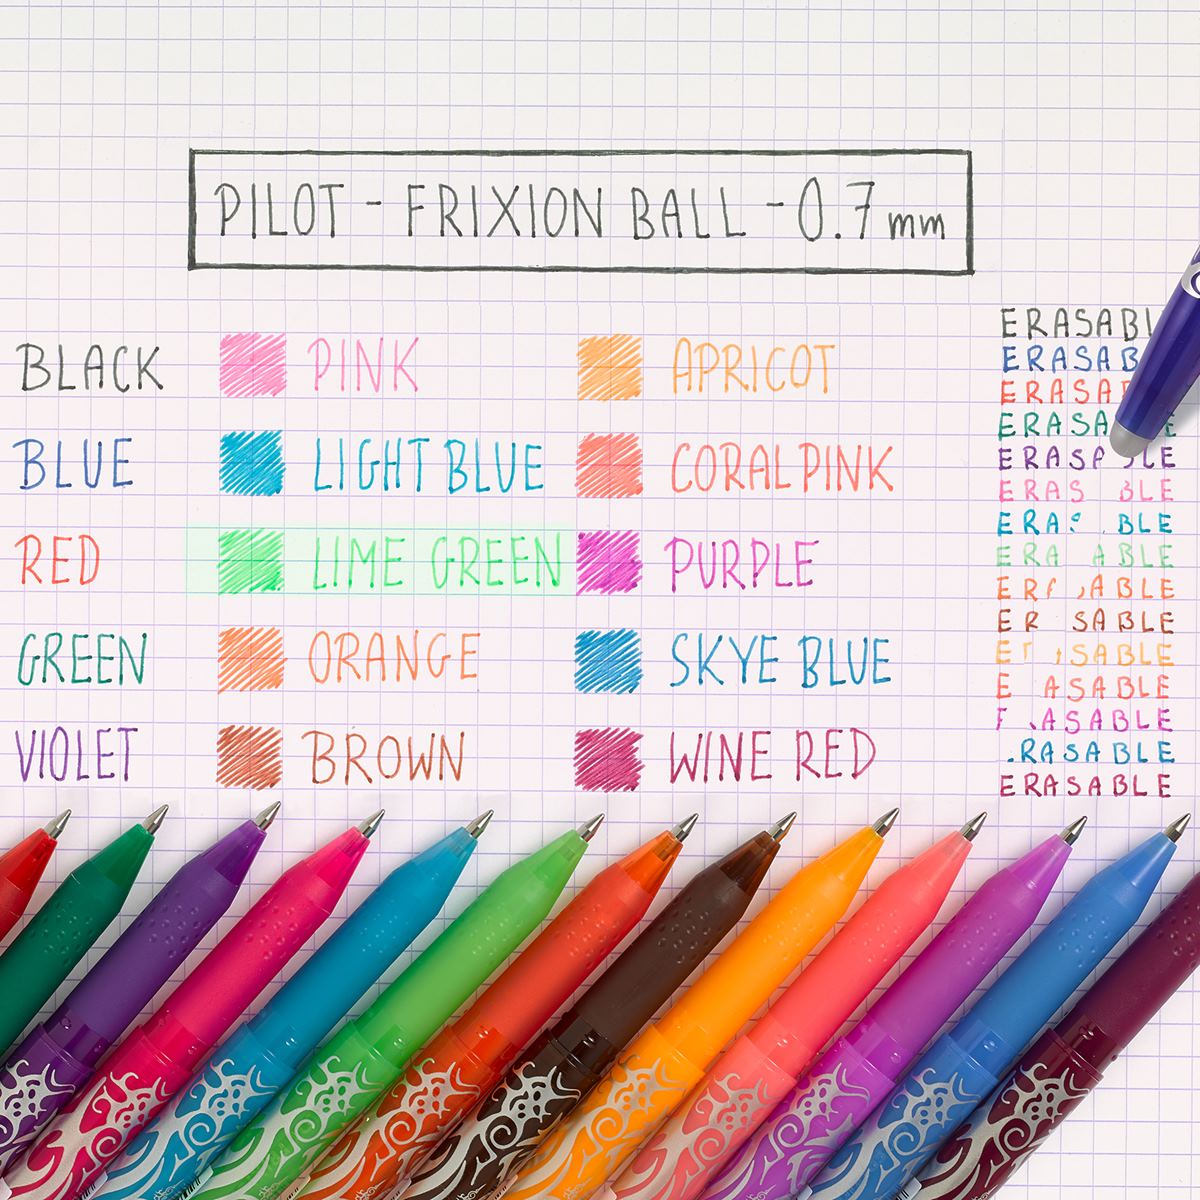 Pilot FriXion Ball Erasable Rollerball Pen - Pink